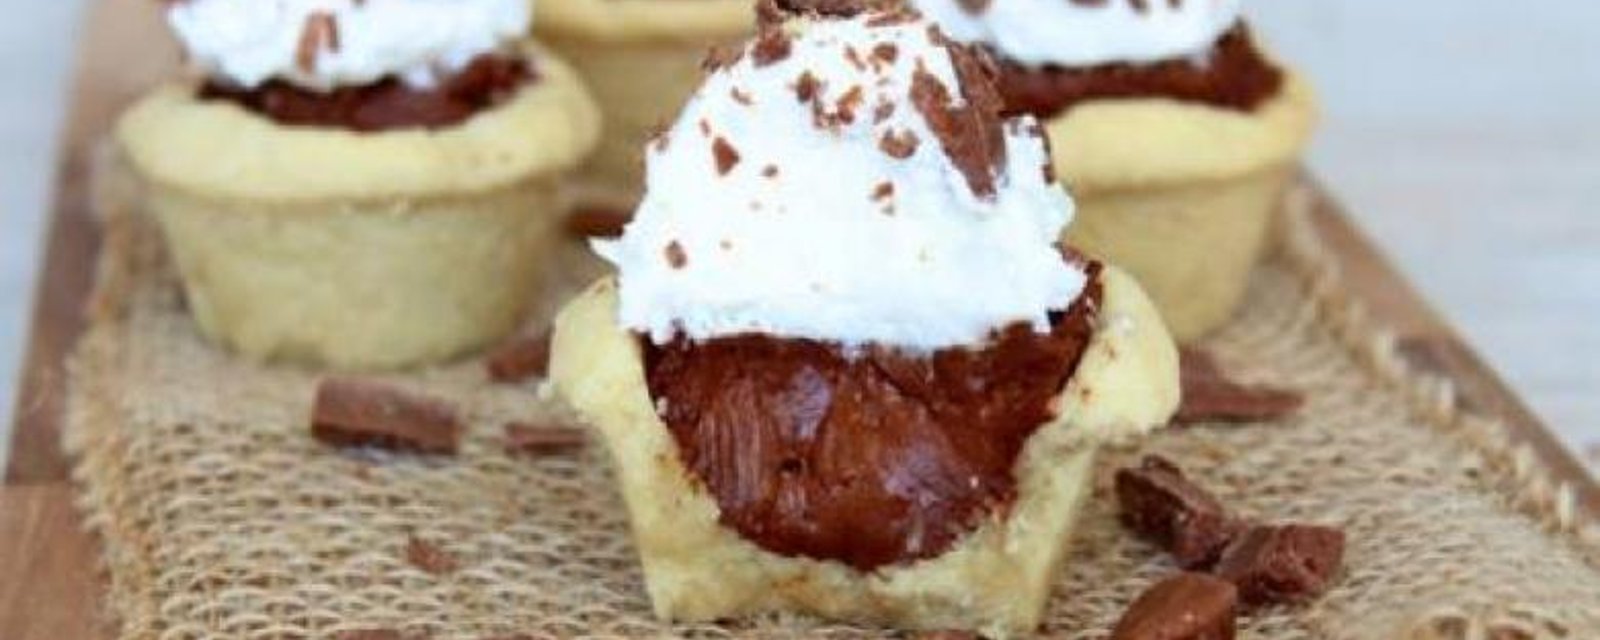 12 délicieux desserts que vous ne saviez pas que vous pouviez faire avec un moule à muffin